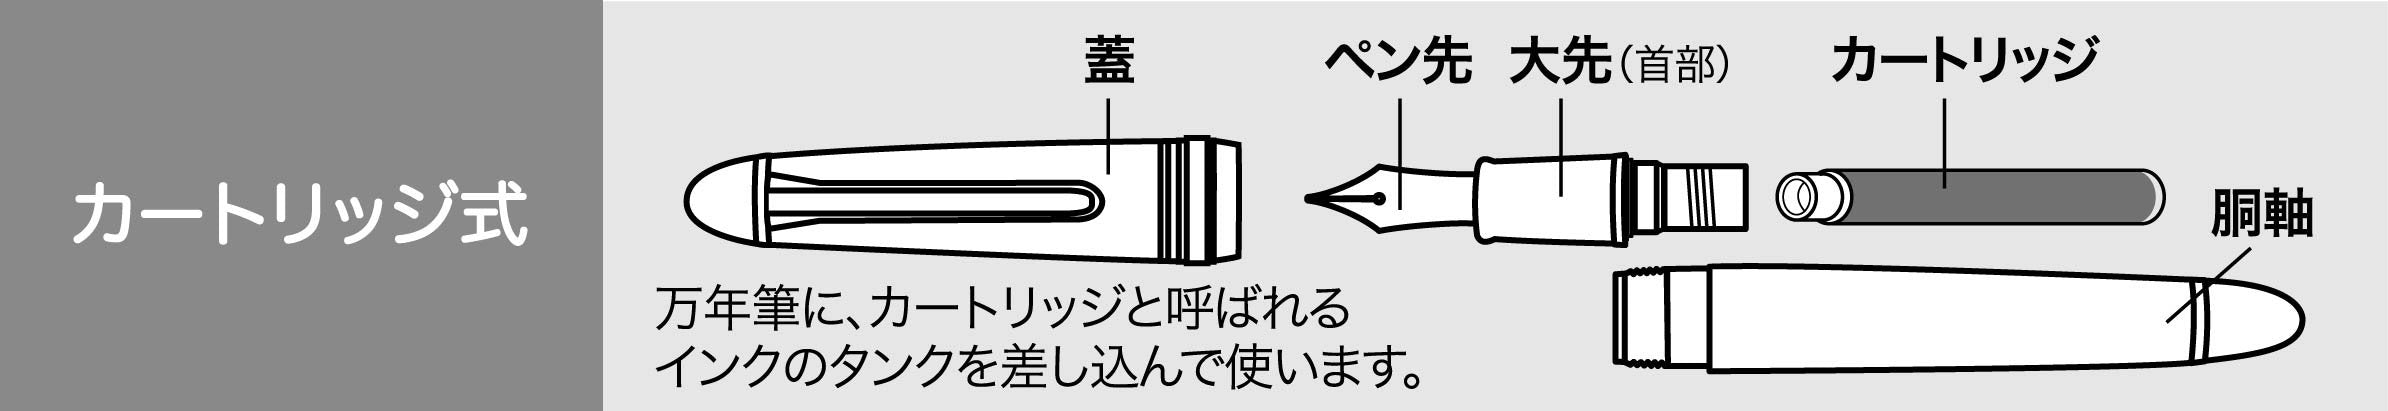 Sailor 钢笔染料墨盒墨水黑色型号 13-0404-120